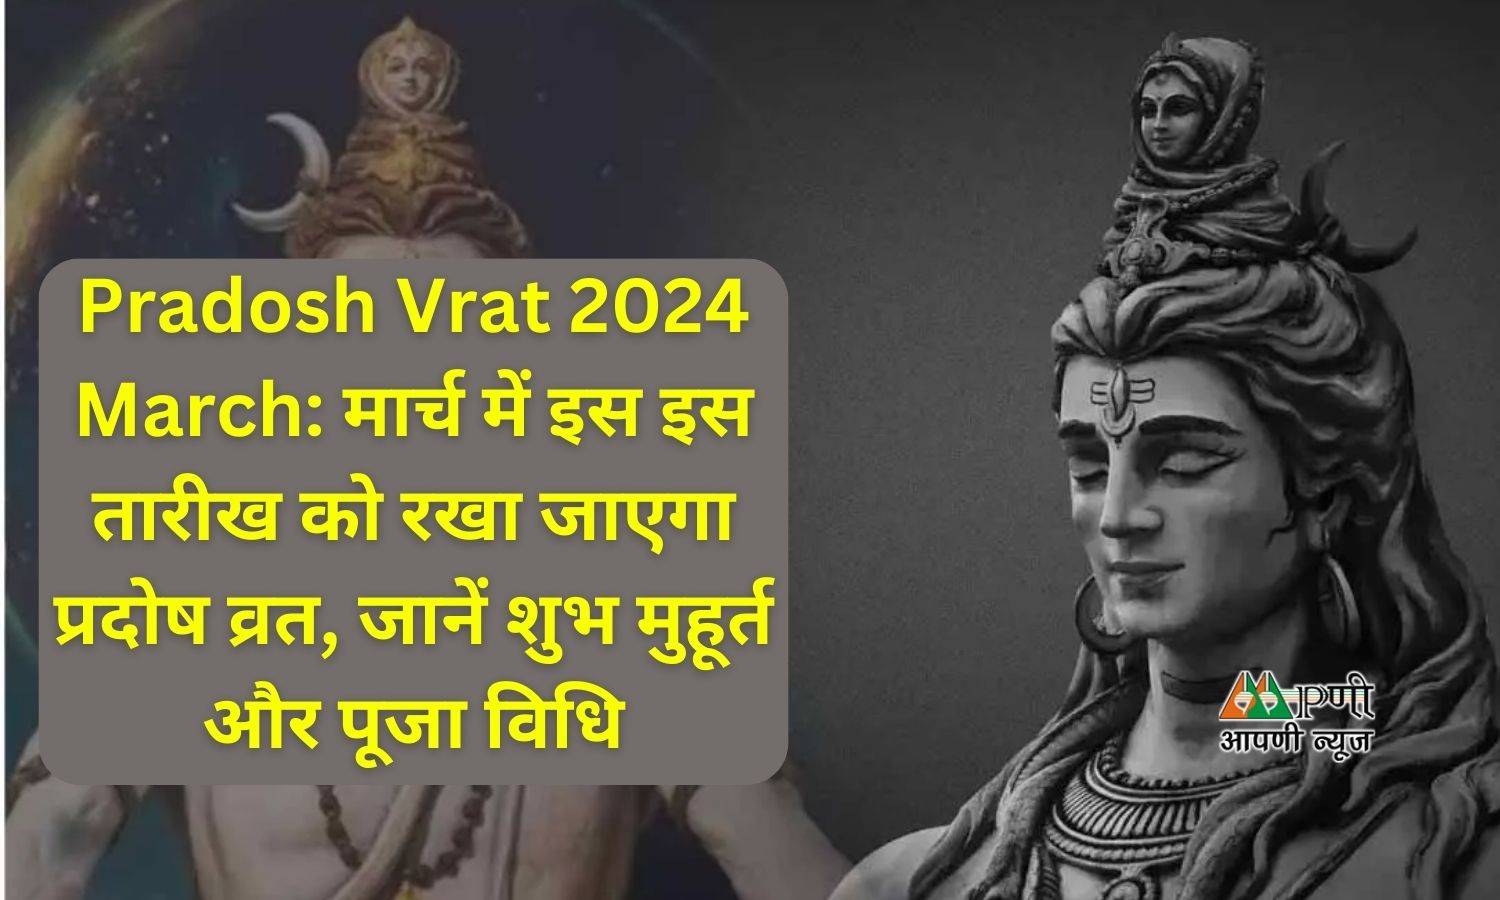 Pradosh Vrat 2024 March: मार्च में इस इस तारीख को रखा जाएगा प्रदोष व्रत, जानें शुभ मुहूर्त और पूजा विधि